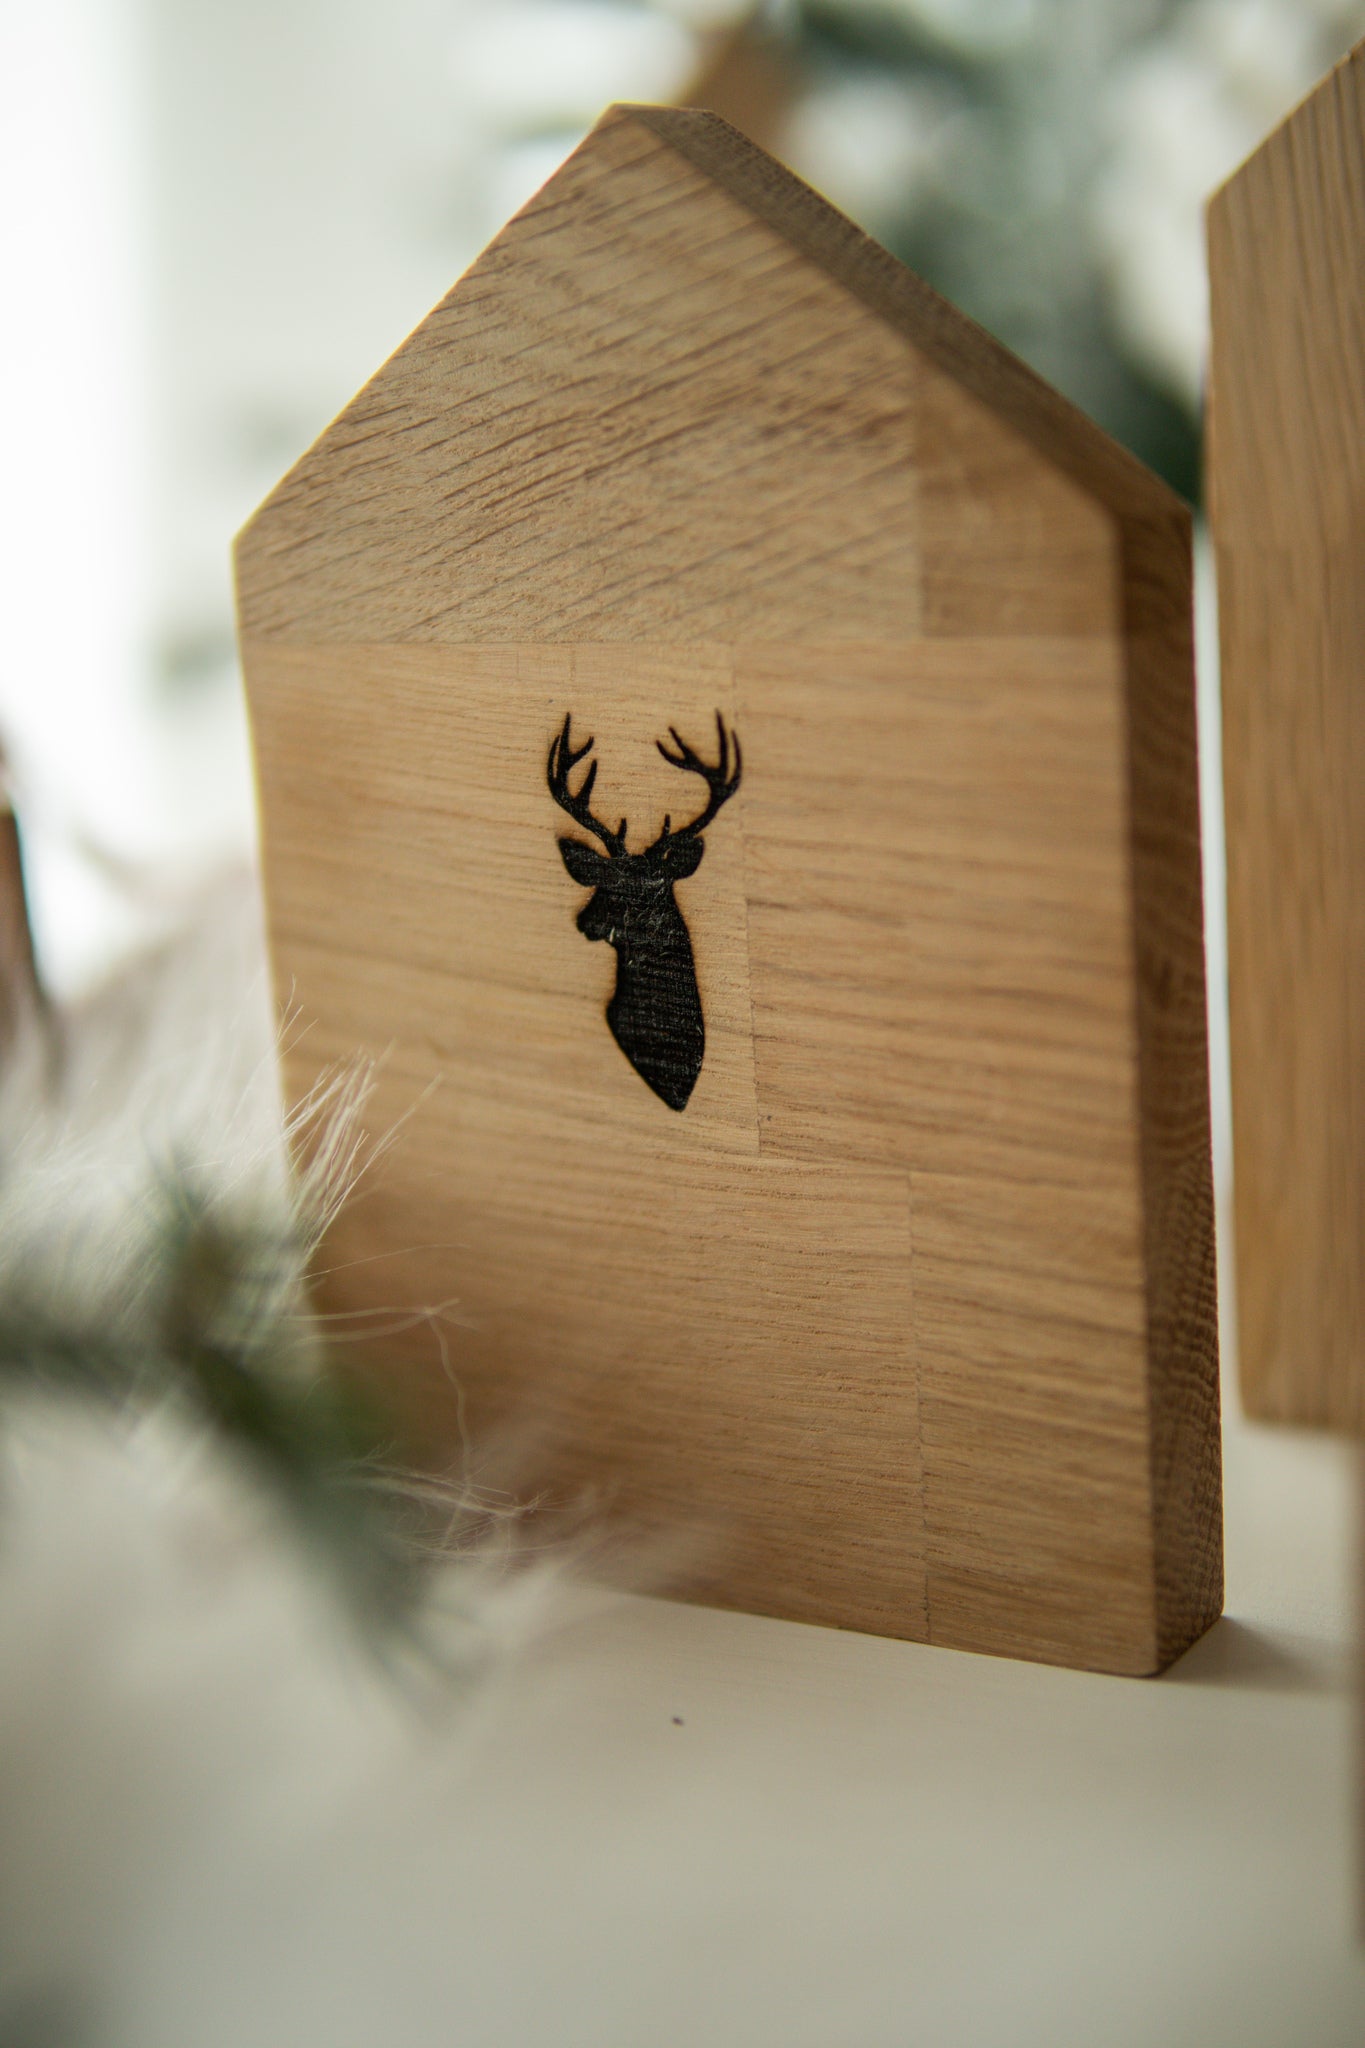 Set Casette di Natale in legno di rovere con incisioni